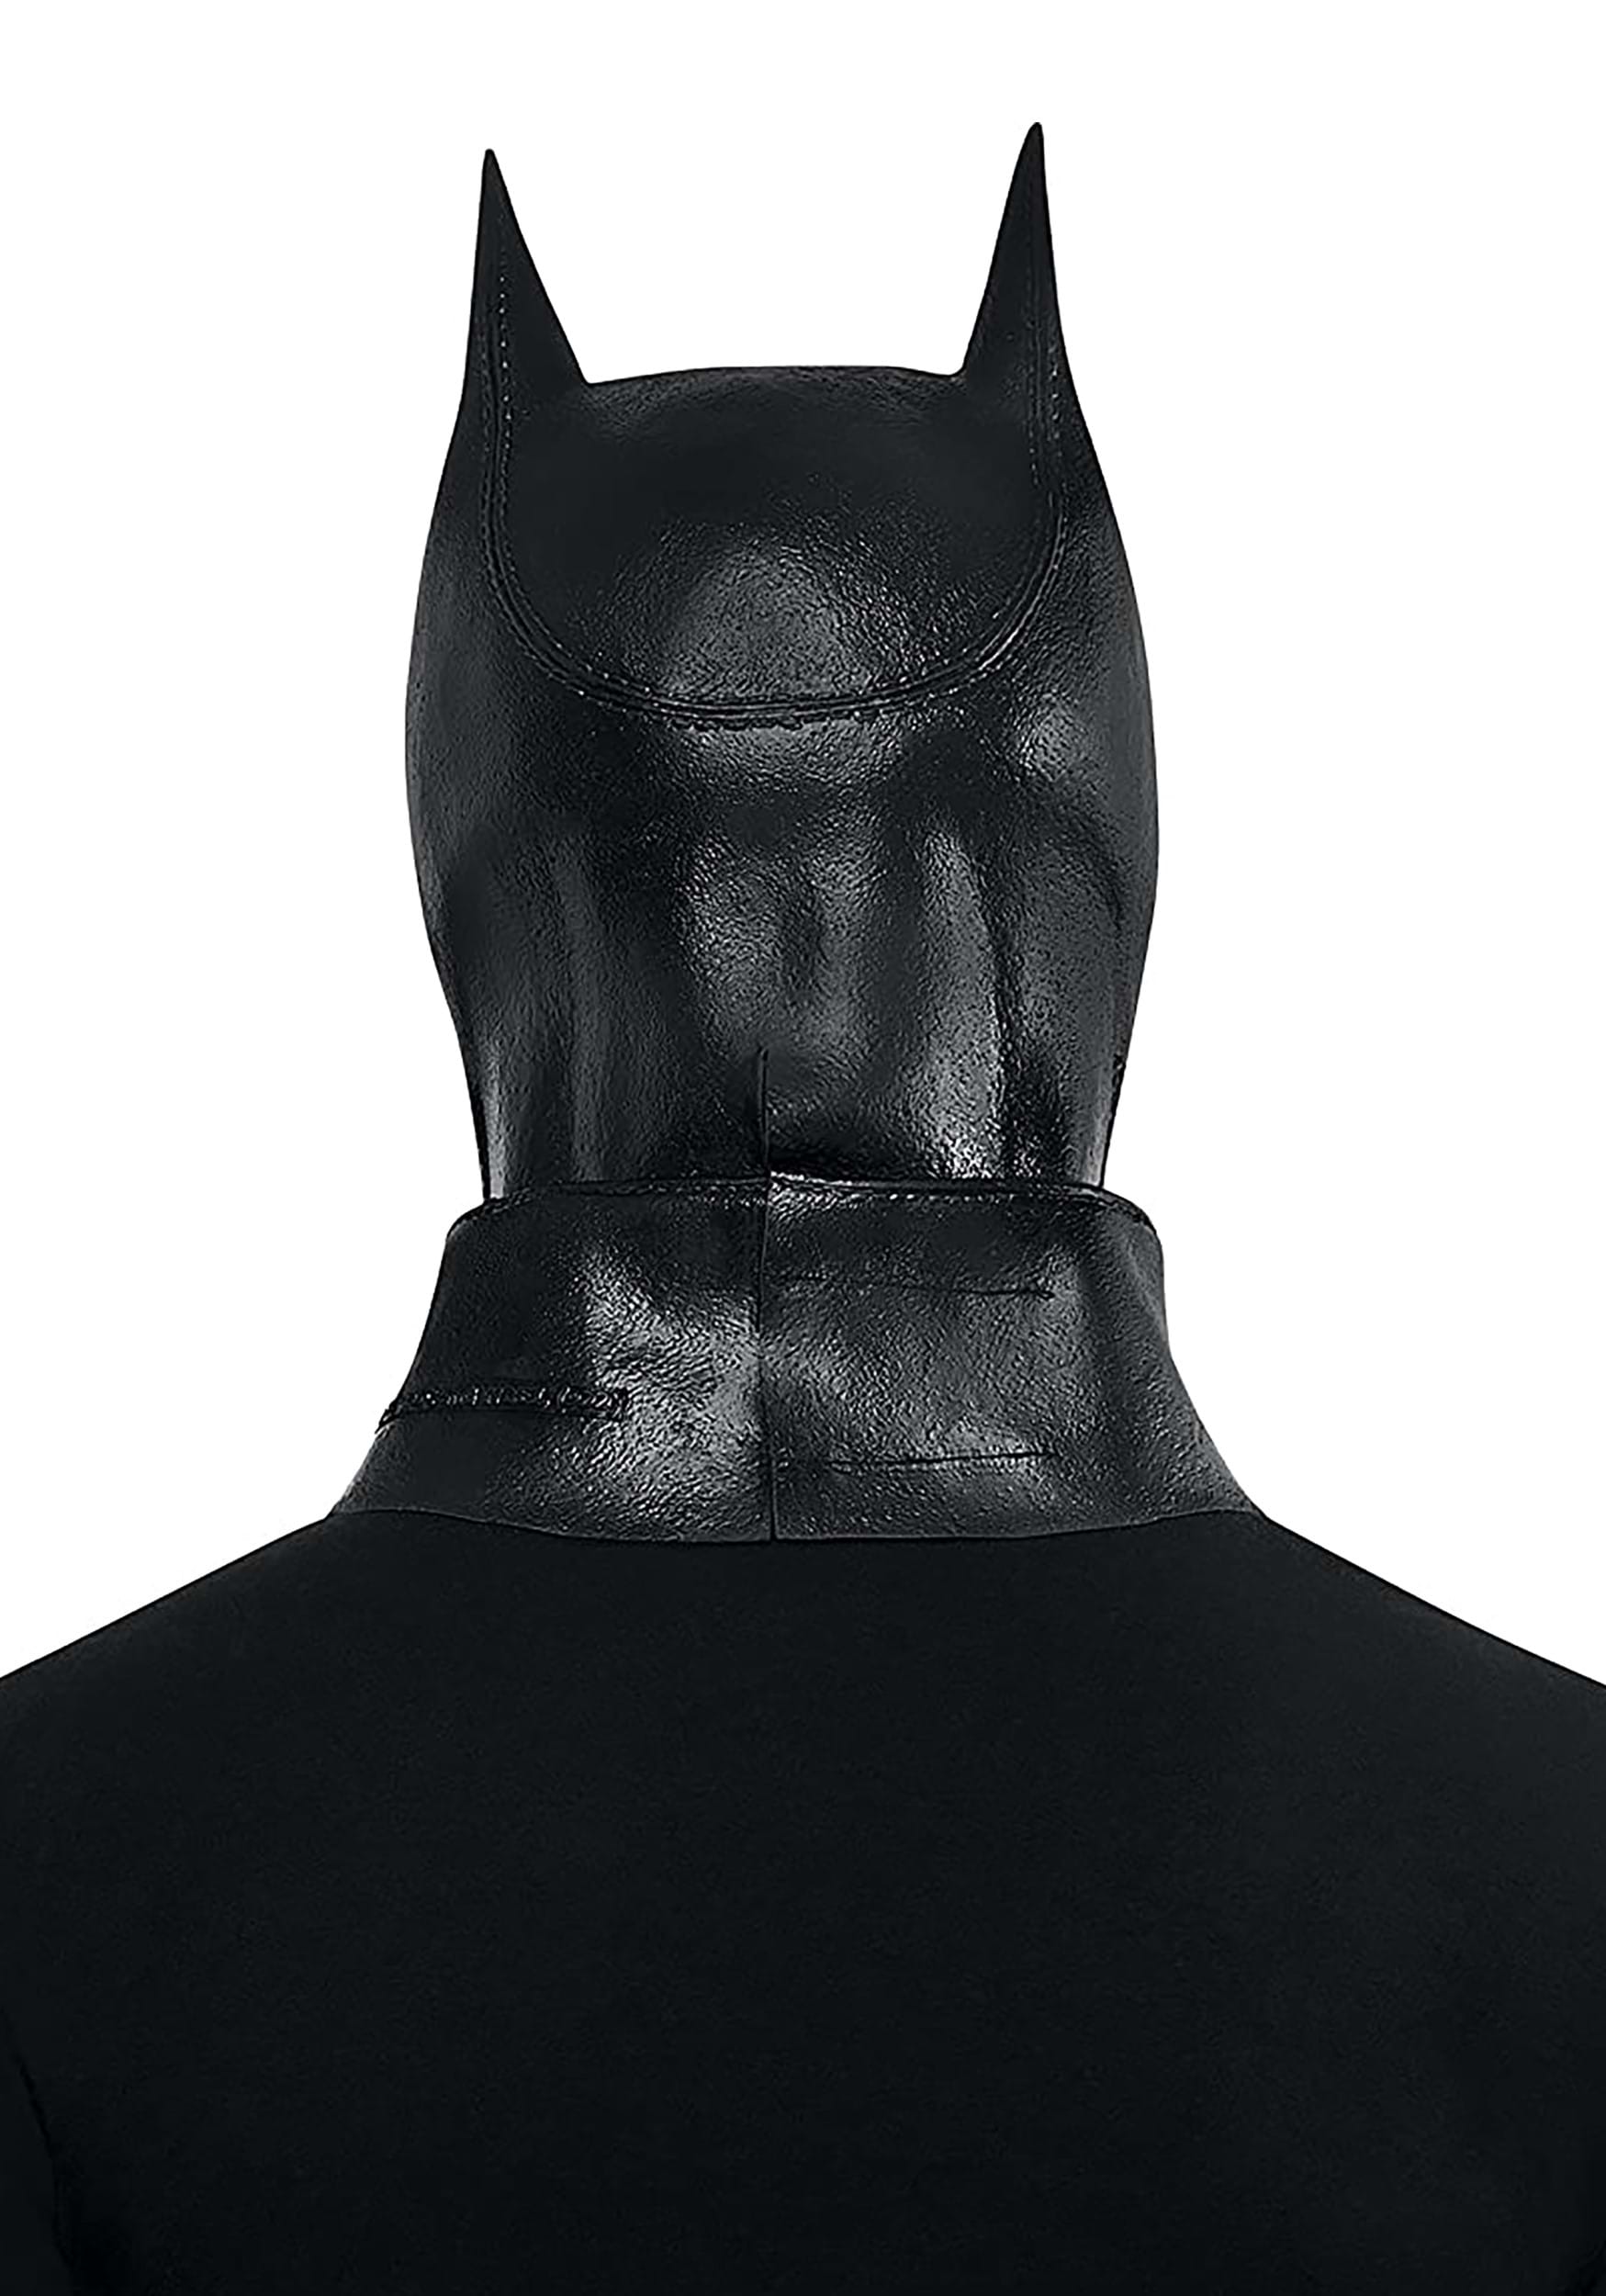 Máscara de látex de Batman para adultos Multicolor Colombia – Yaxa Store